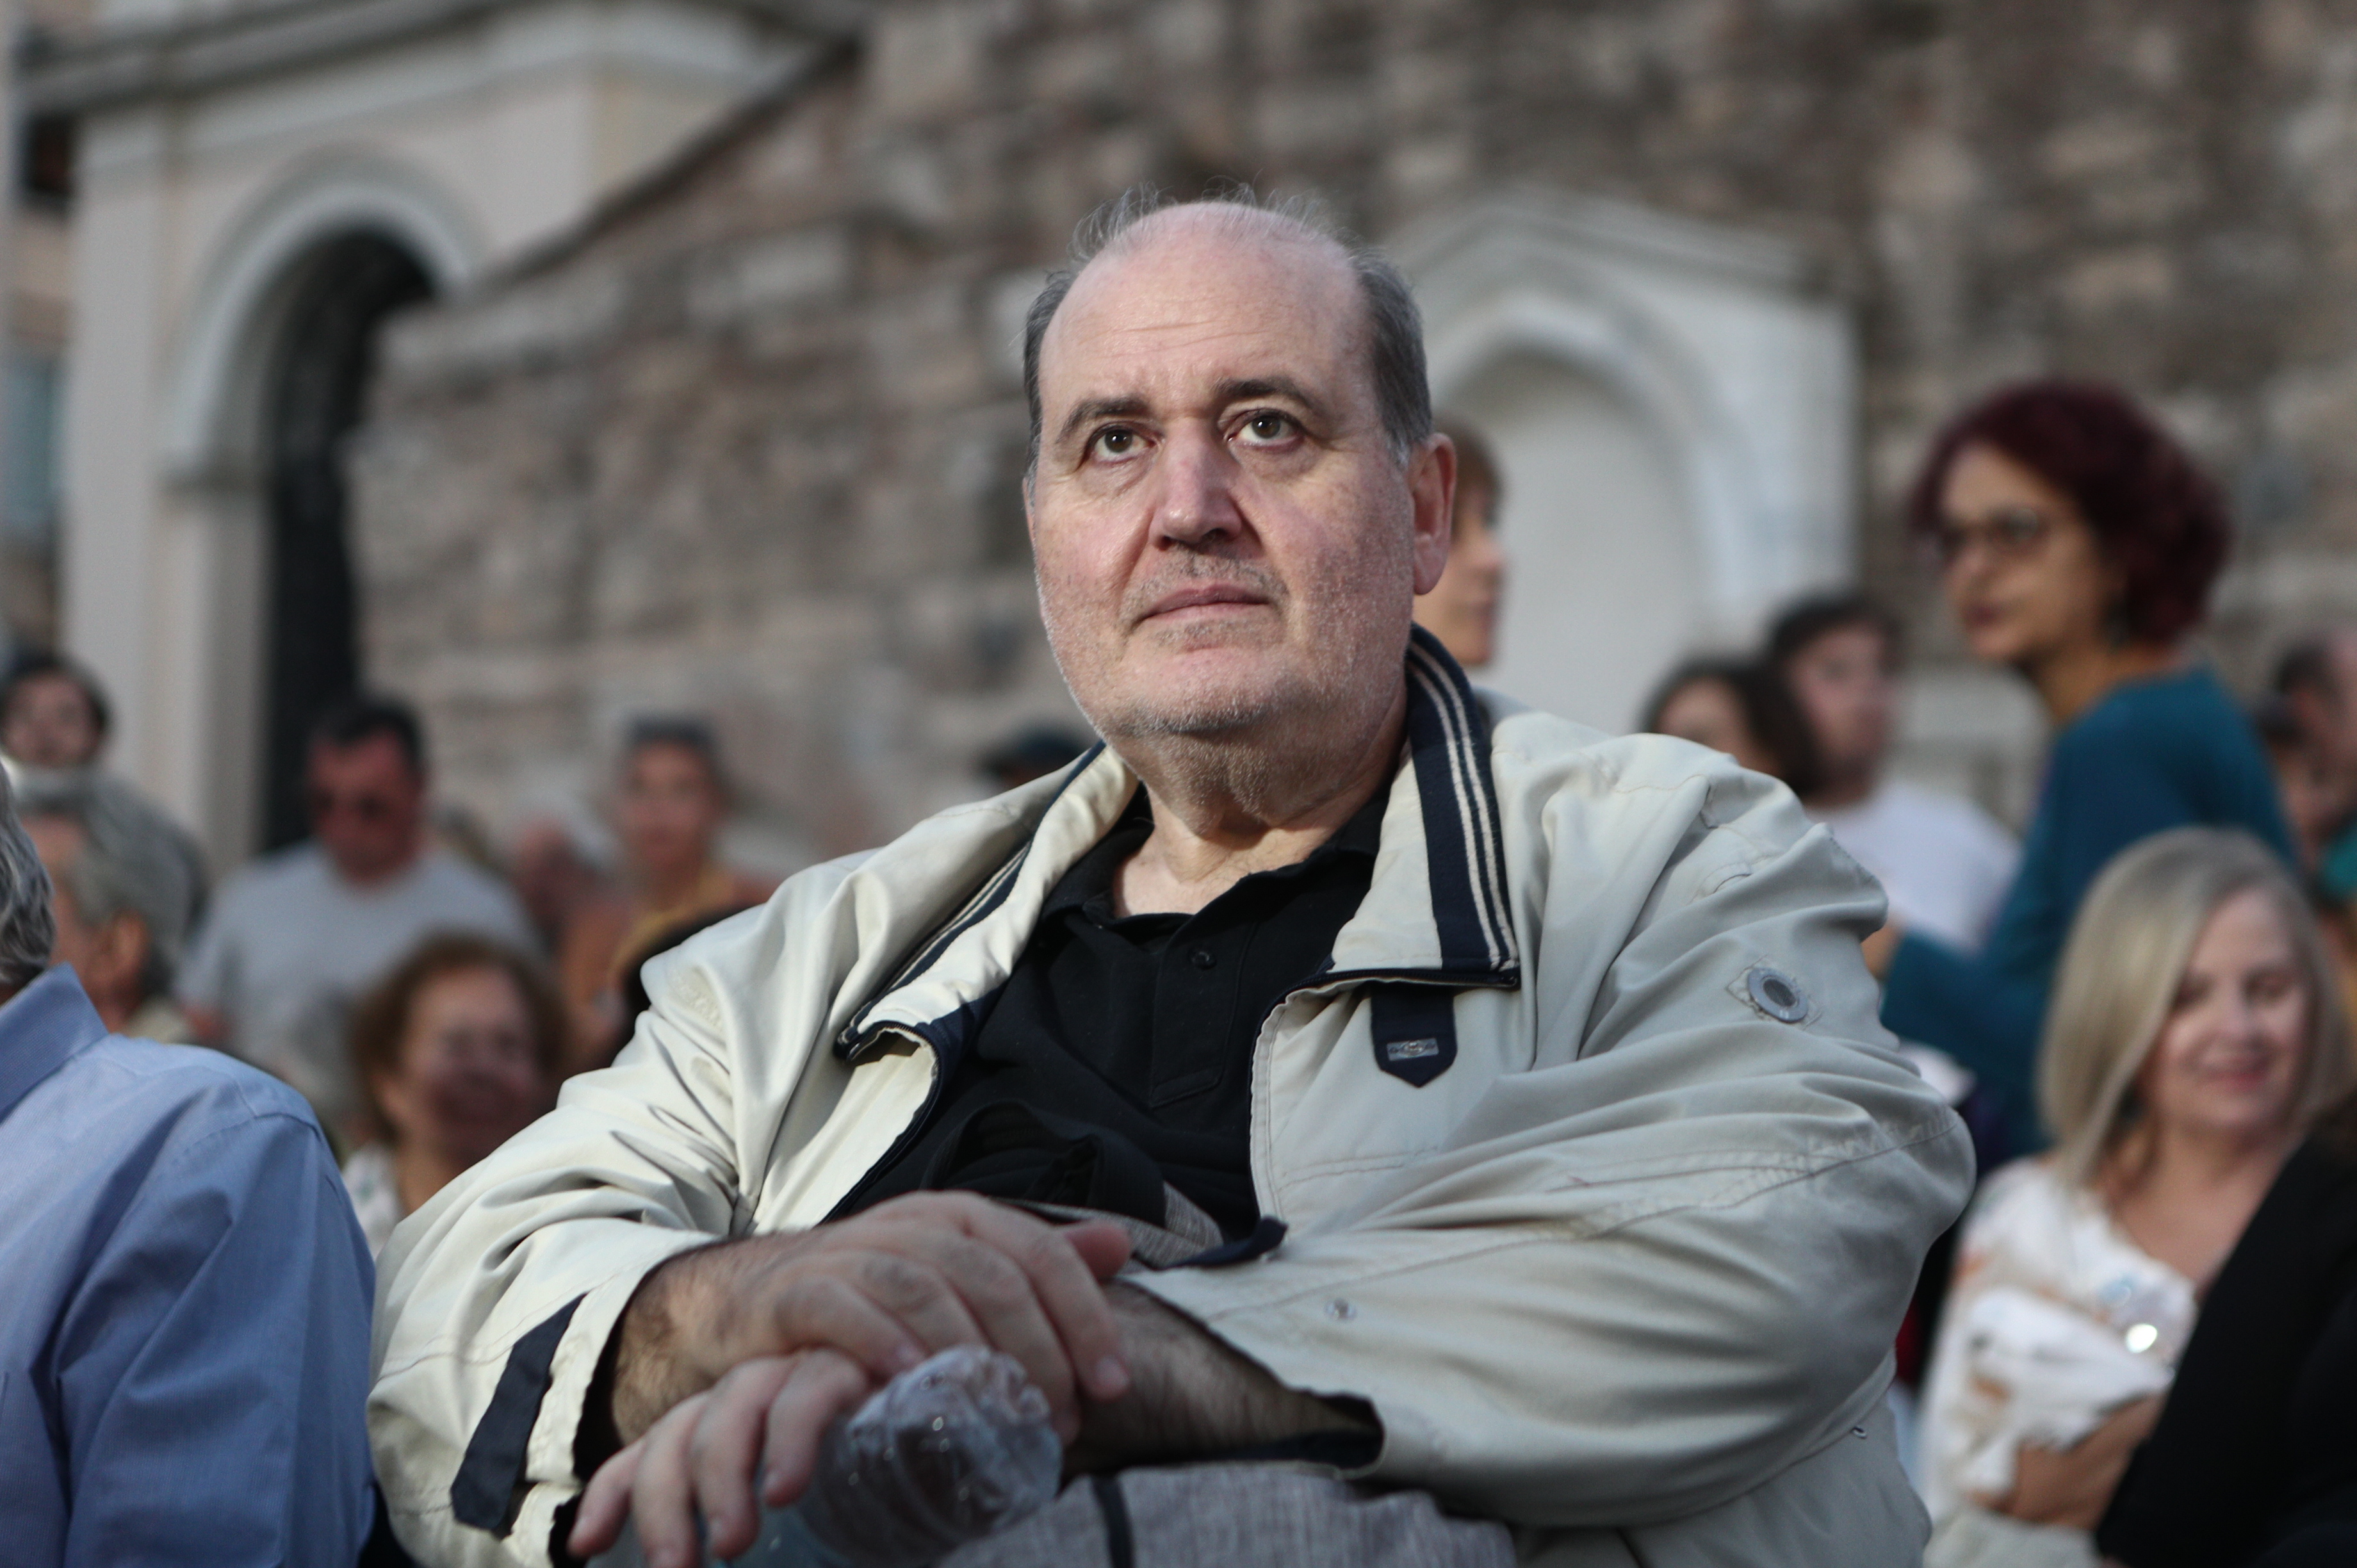 Λάβρος Φίλης κατά Κασσελάκη: «Δε γνωρίζει προφανώς τη δημοκρατική κουλτούρα του ΣΥΡΙΖΑ»